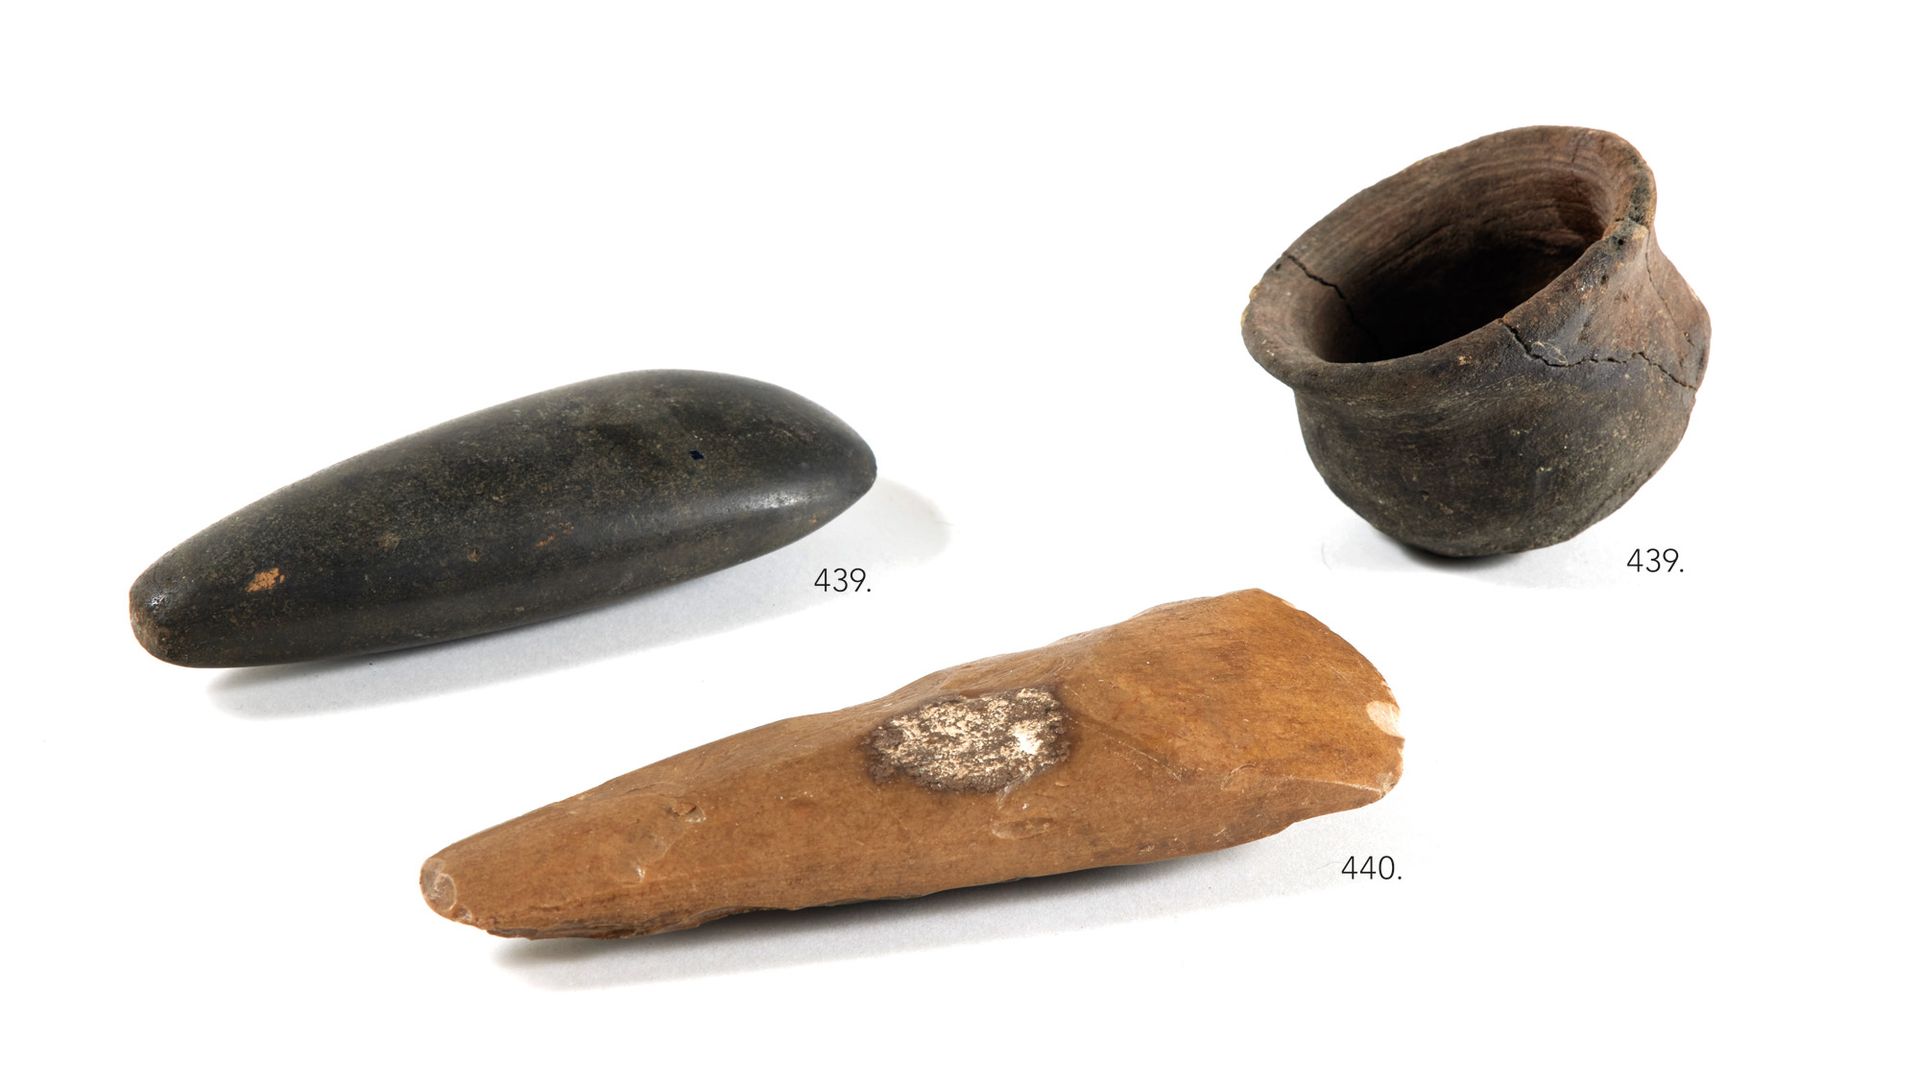 HACHE 斧头

抛光的直边

米棕色的燧石。边缘上的芯片

法国, 新石器时代晚期

旧标签显示 "巴黎

长：16厘米